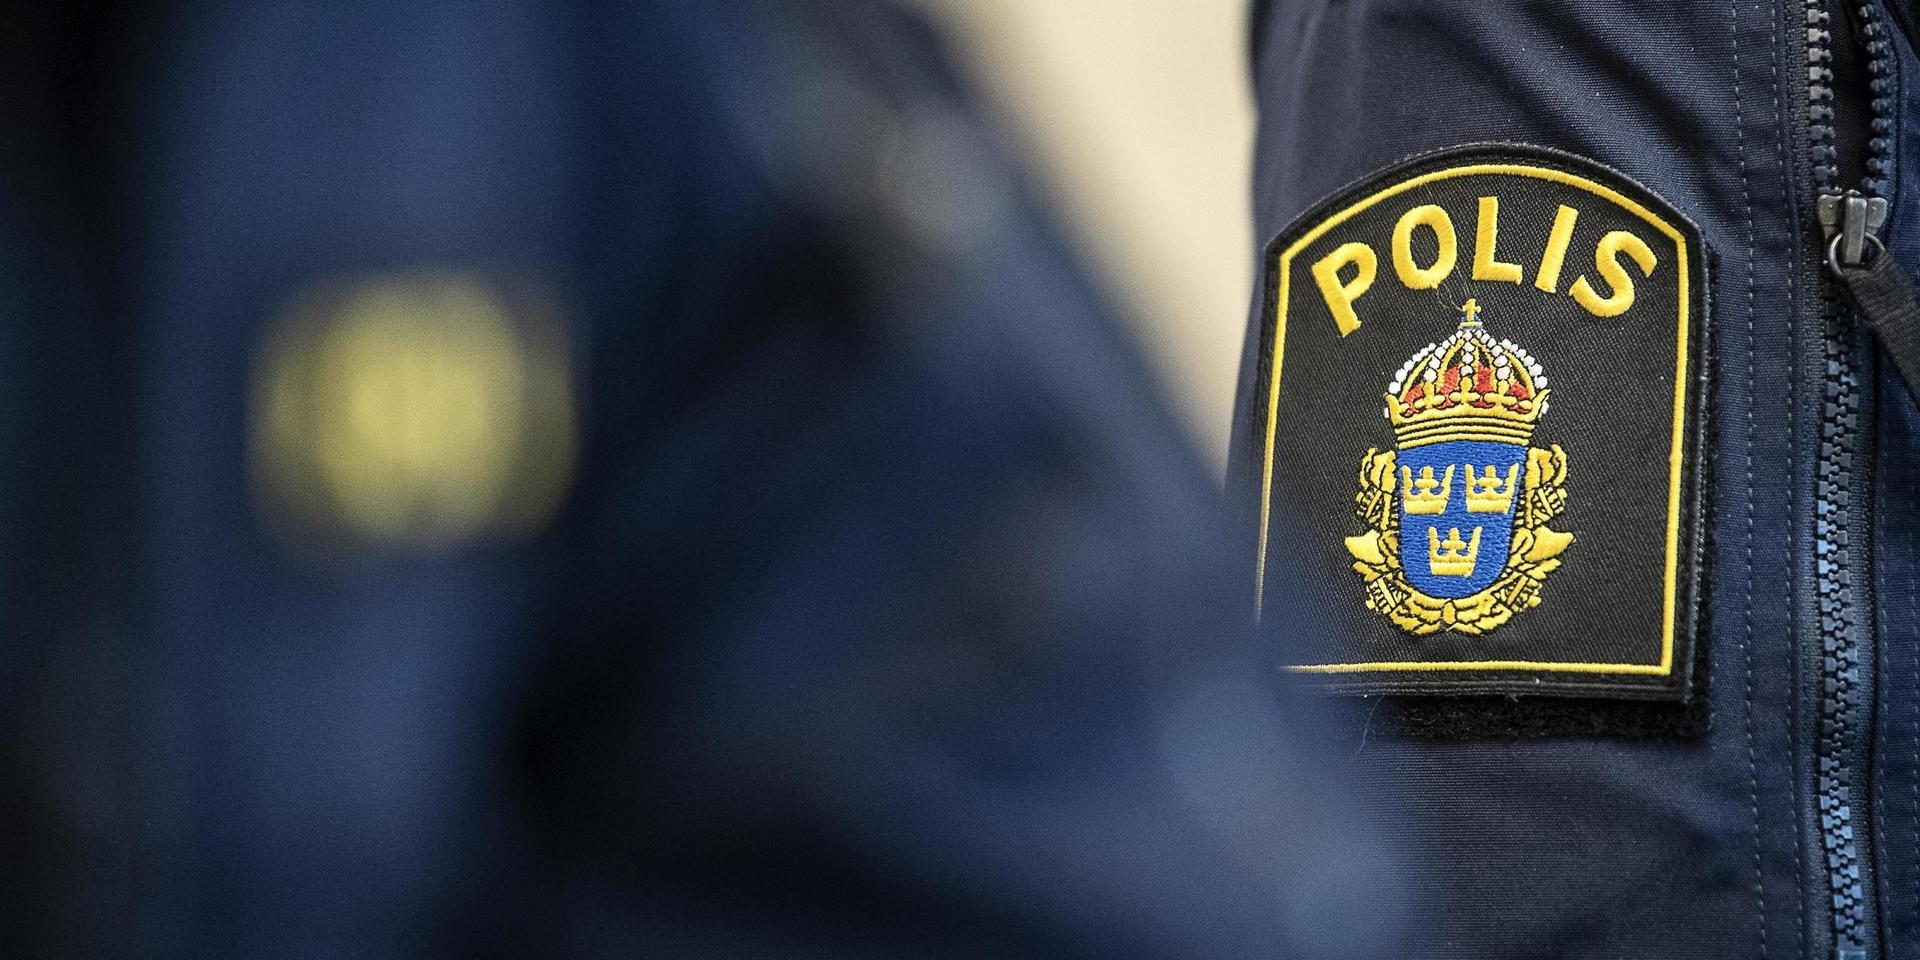 Äldre personer i Halland har utsatts för bedrägerier och bedrägeriförsök de senaste veckorna.